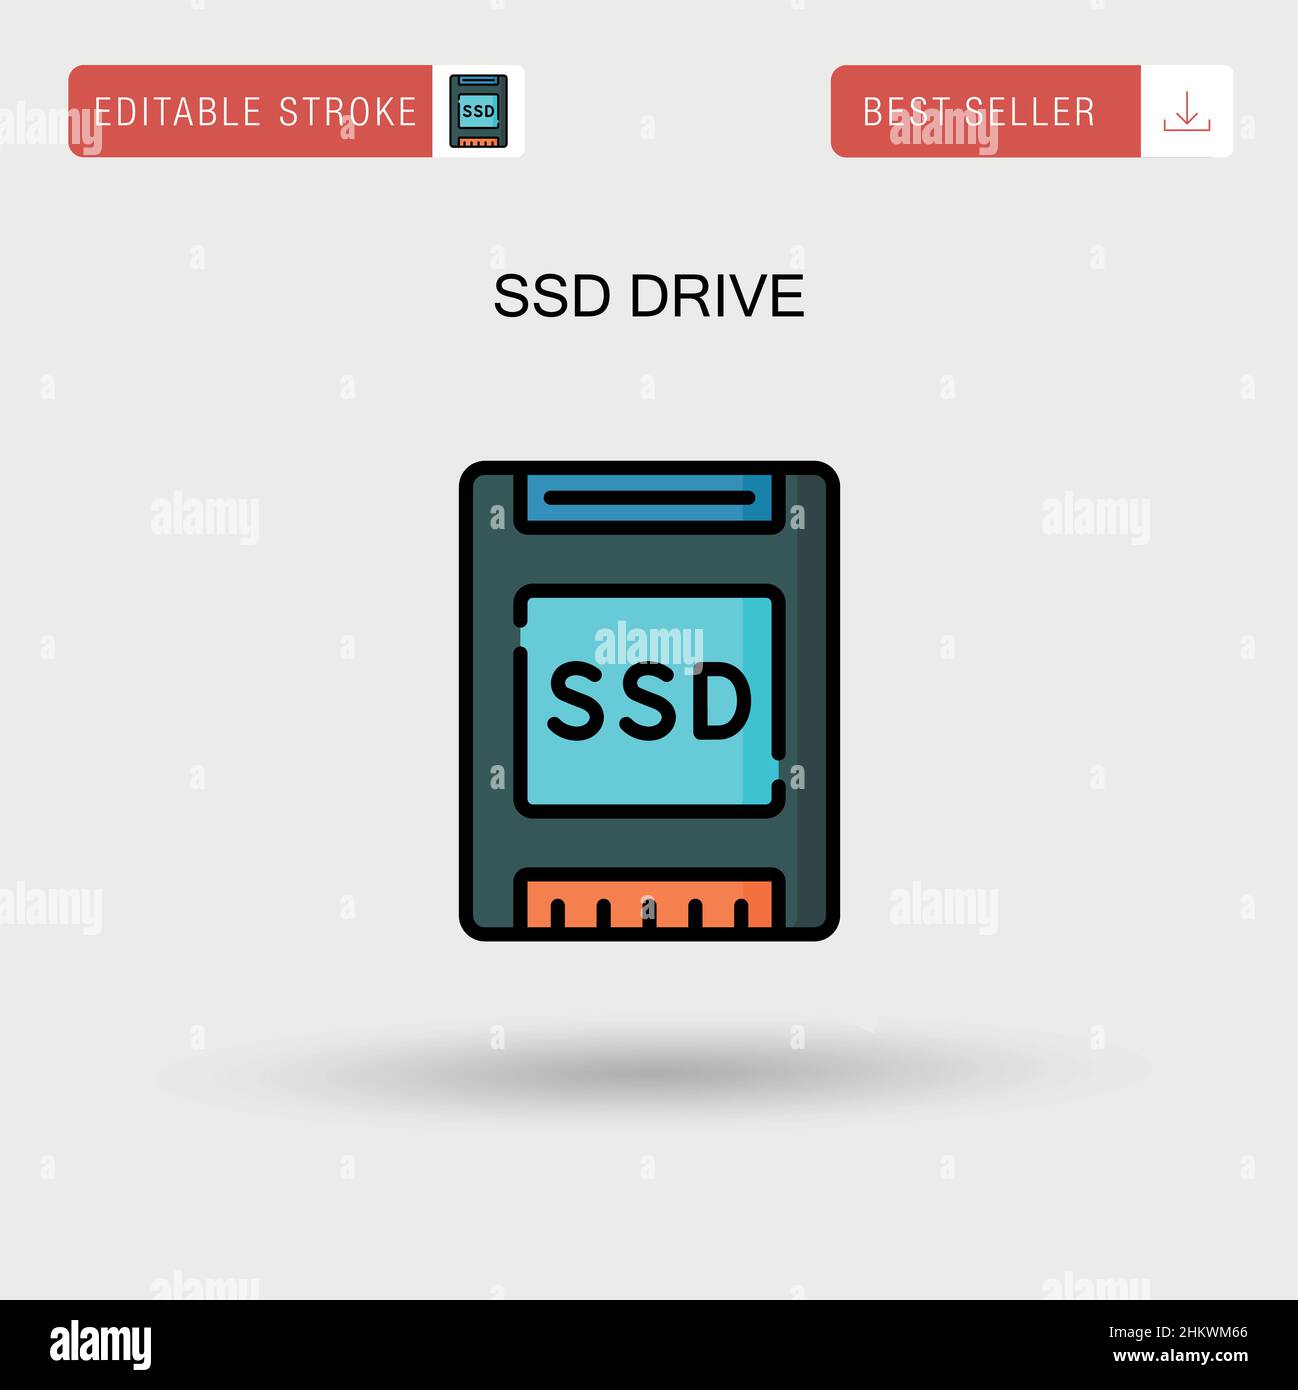 Einfaches Vektorsymbol für SSD-Laufwerke. Stock Vektor